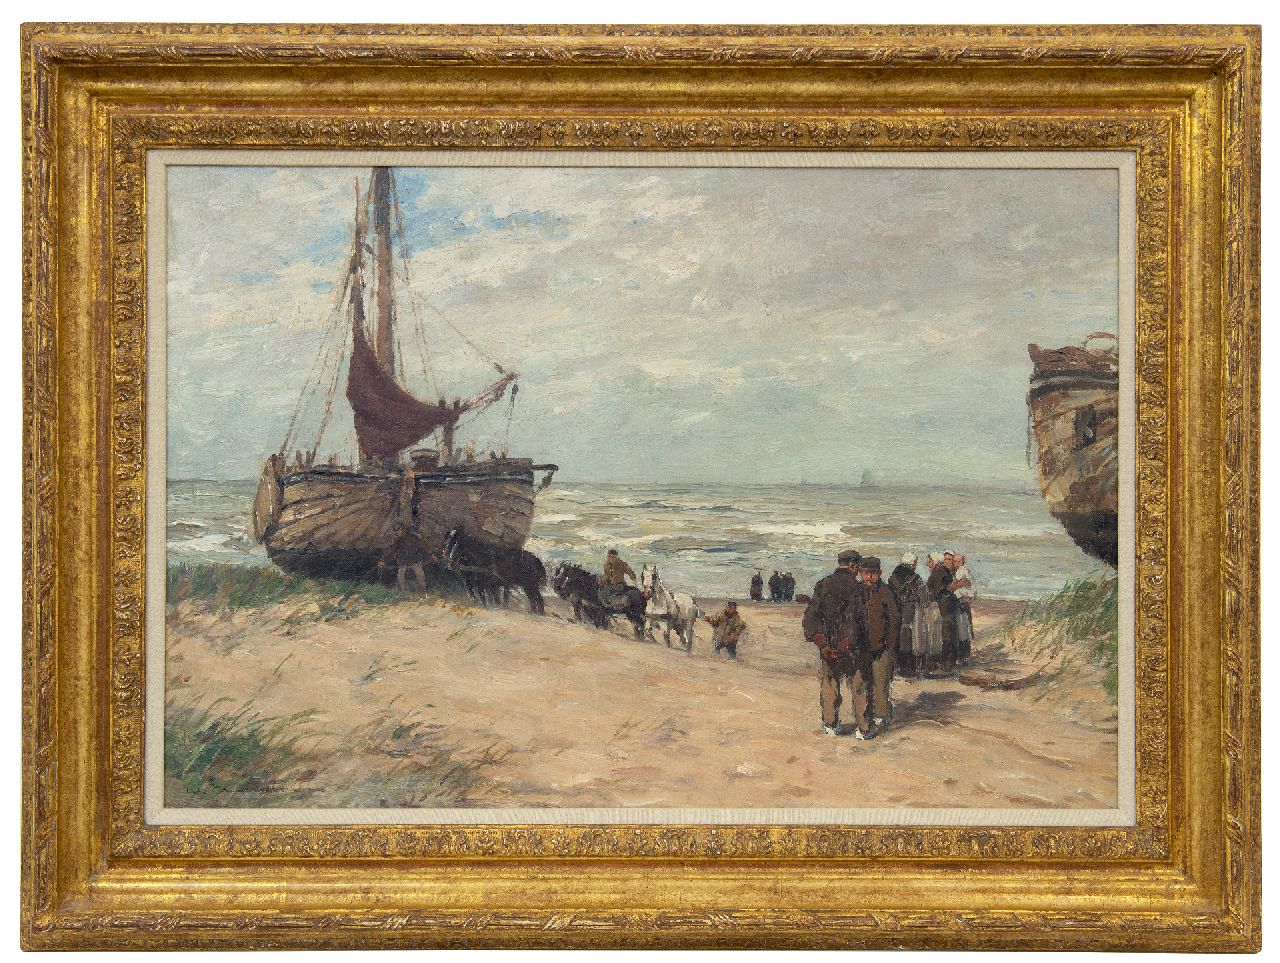 Hambüchen W.  | Wilhelm Hambüchen, Bommen en vissersvolk op het strand van Katwijk, olieverf op doek 50,0 x 75,0 cm, gesigneerd linksonder